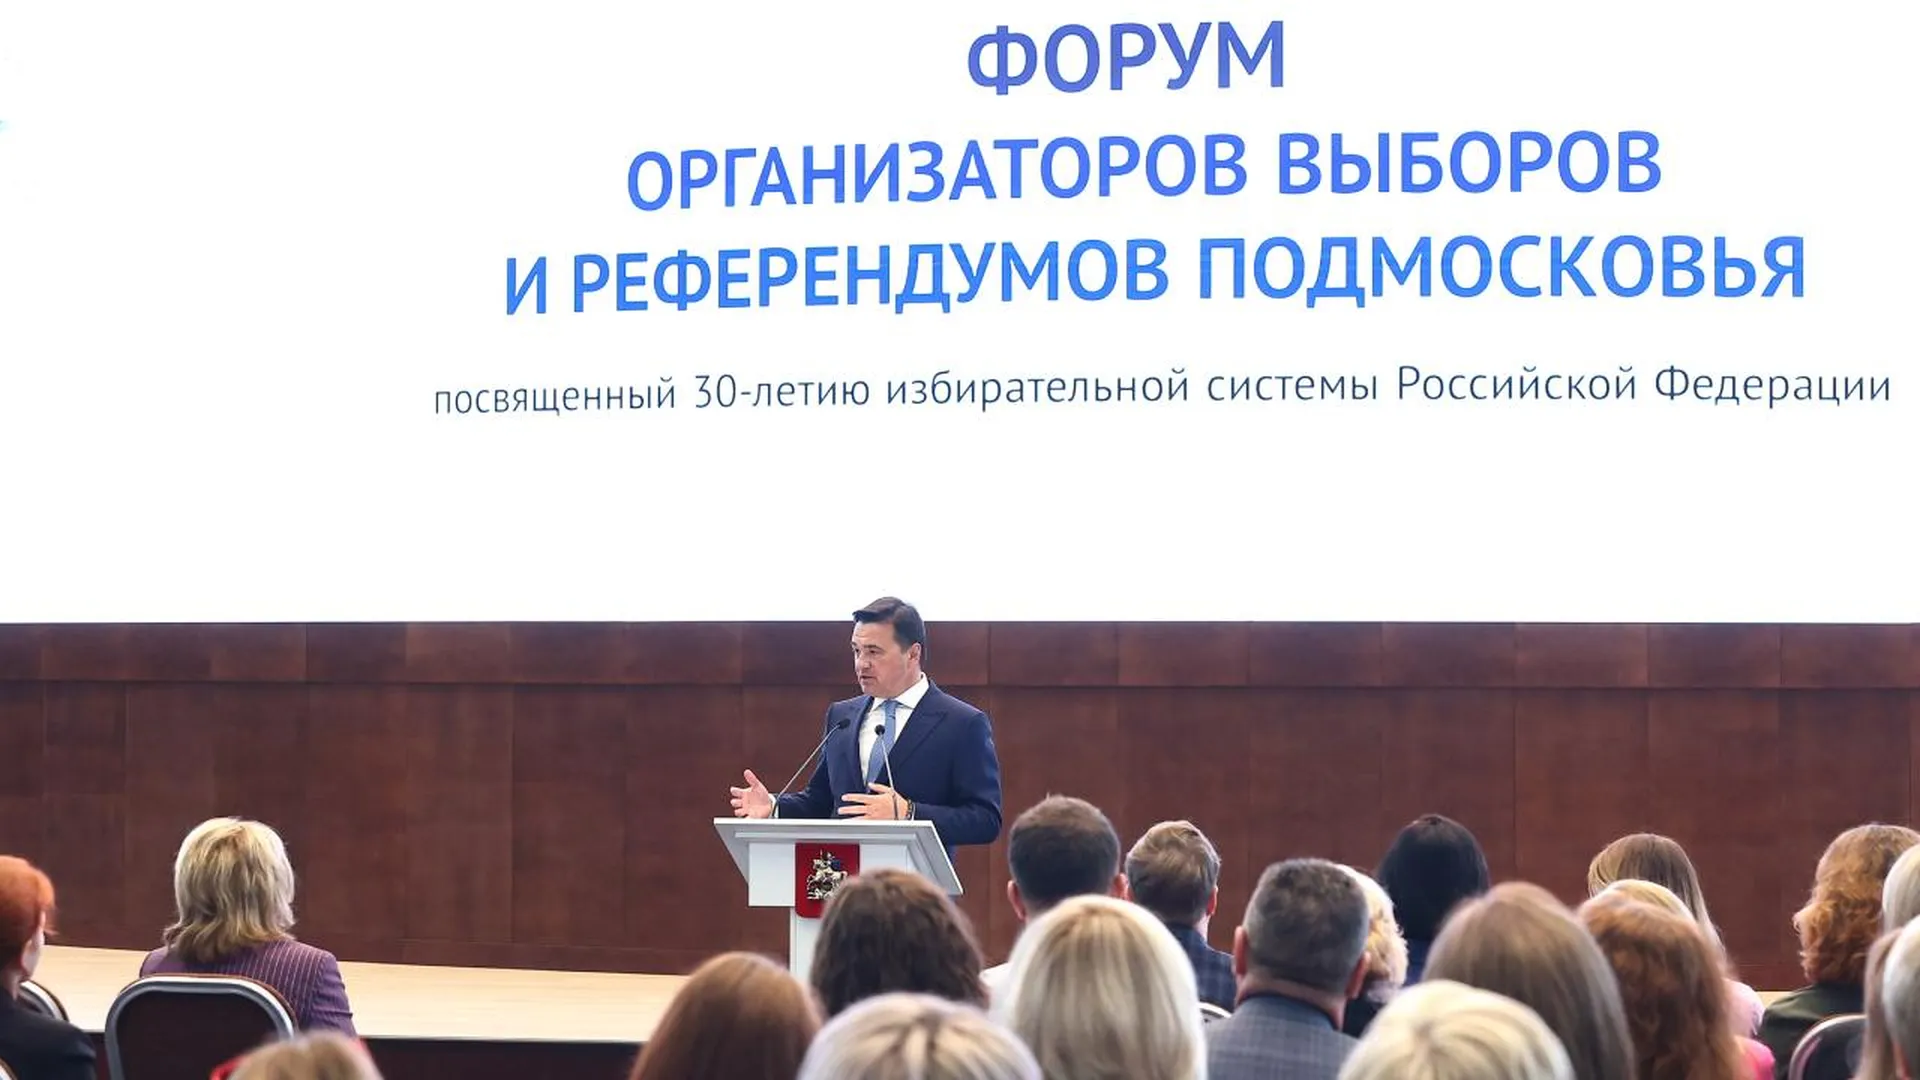 Андрей Воробьев и Элла Памфилова приняли участие в Форуме организаторов выборов и референдумов